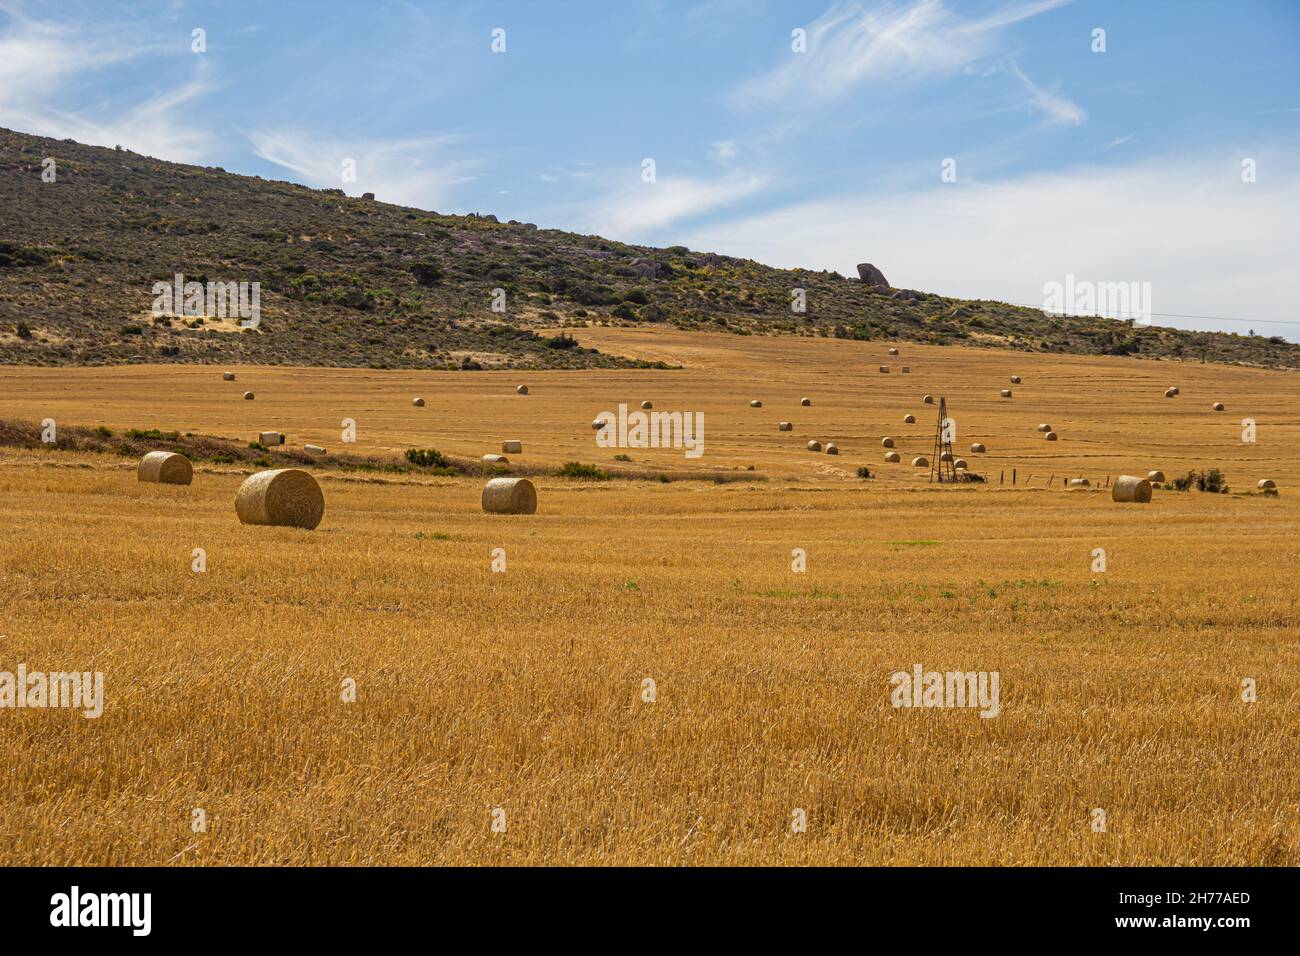 Champ de balles de foin de blé dans une ferme de la baie de Sainte-Hélène, Velddrif, sur la côte ouest du Cap, Afrique du Sud pendant la récolte, récolte estivale Banque D'Images